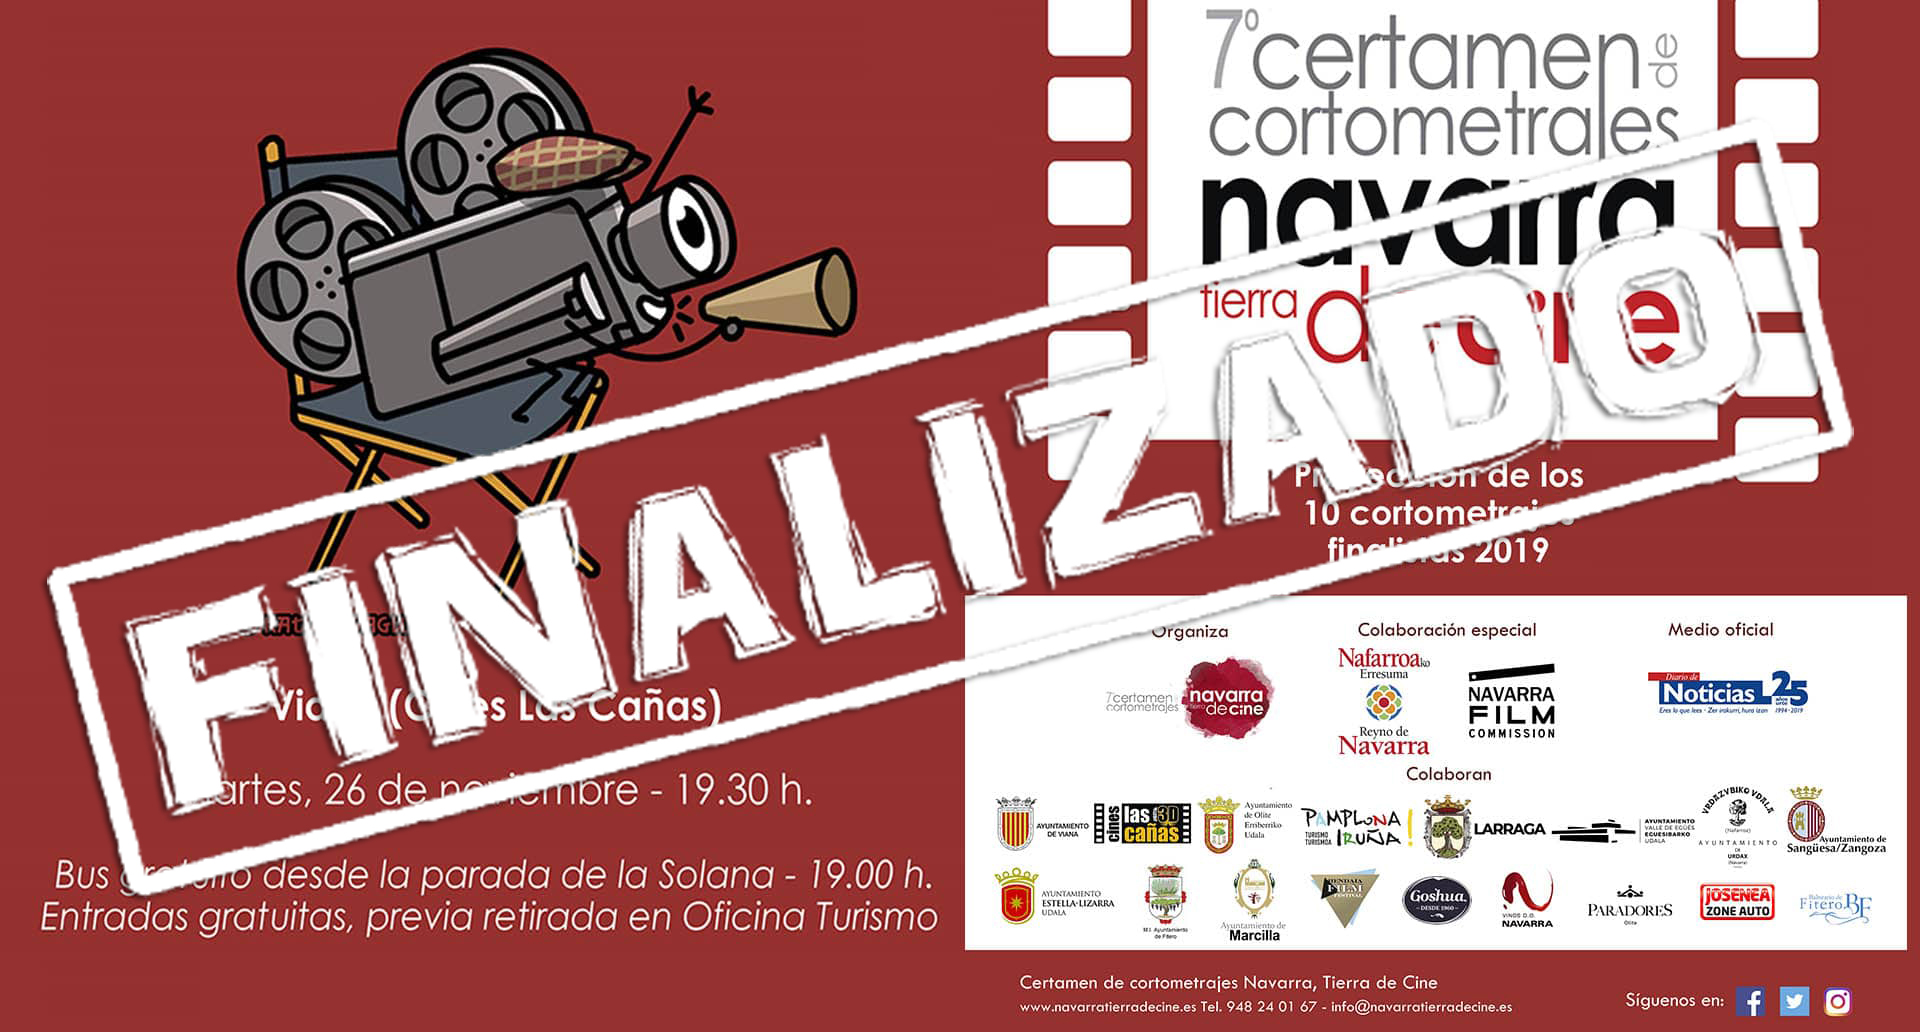 Cines Las Cañas proyectará los 10 cortomatrajes finalistas 2019